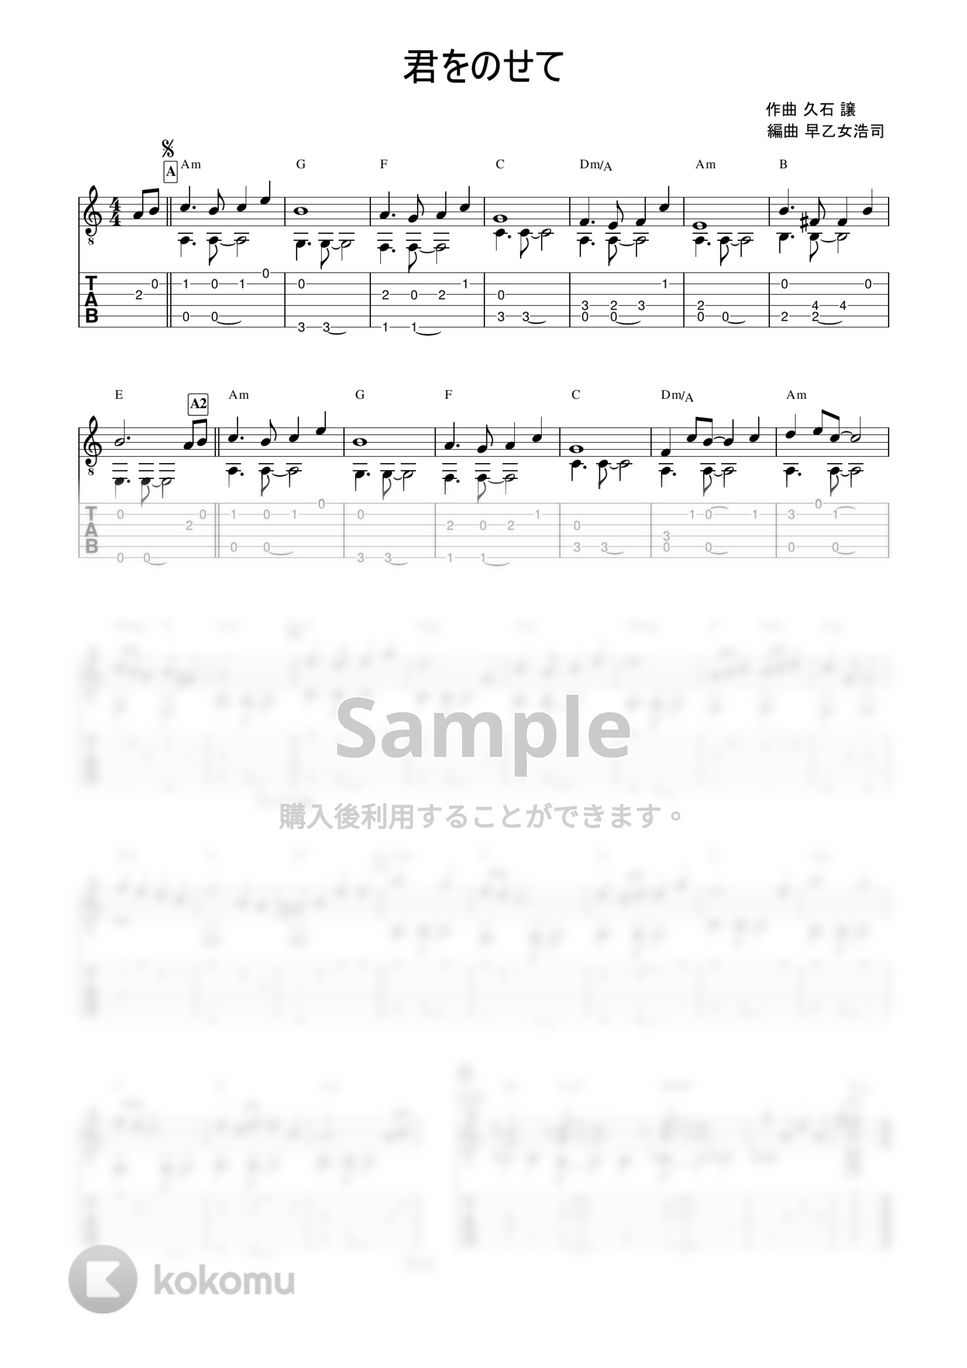 天空の城ラピュタ - 君をのせて (簡単ソロギター) by 早乙女浩司